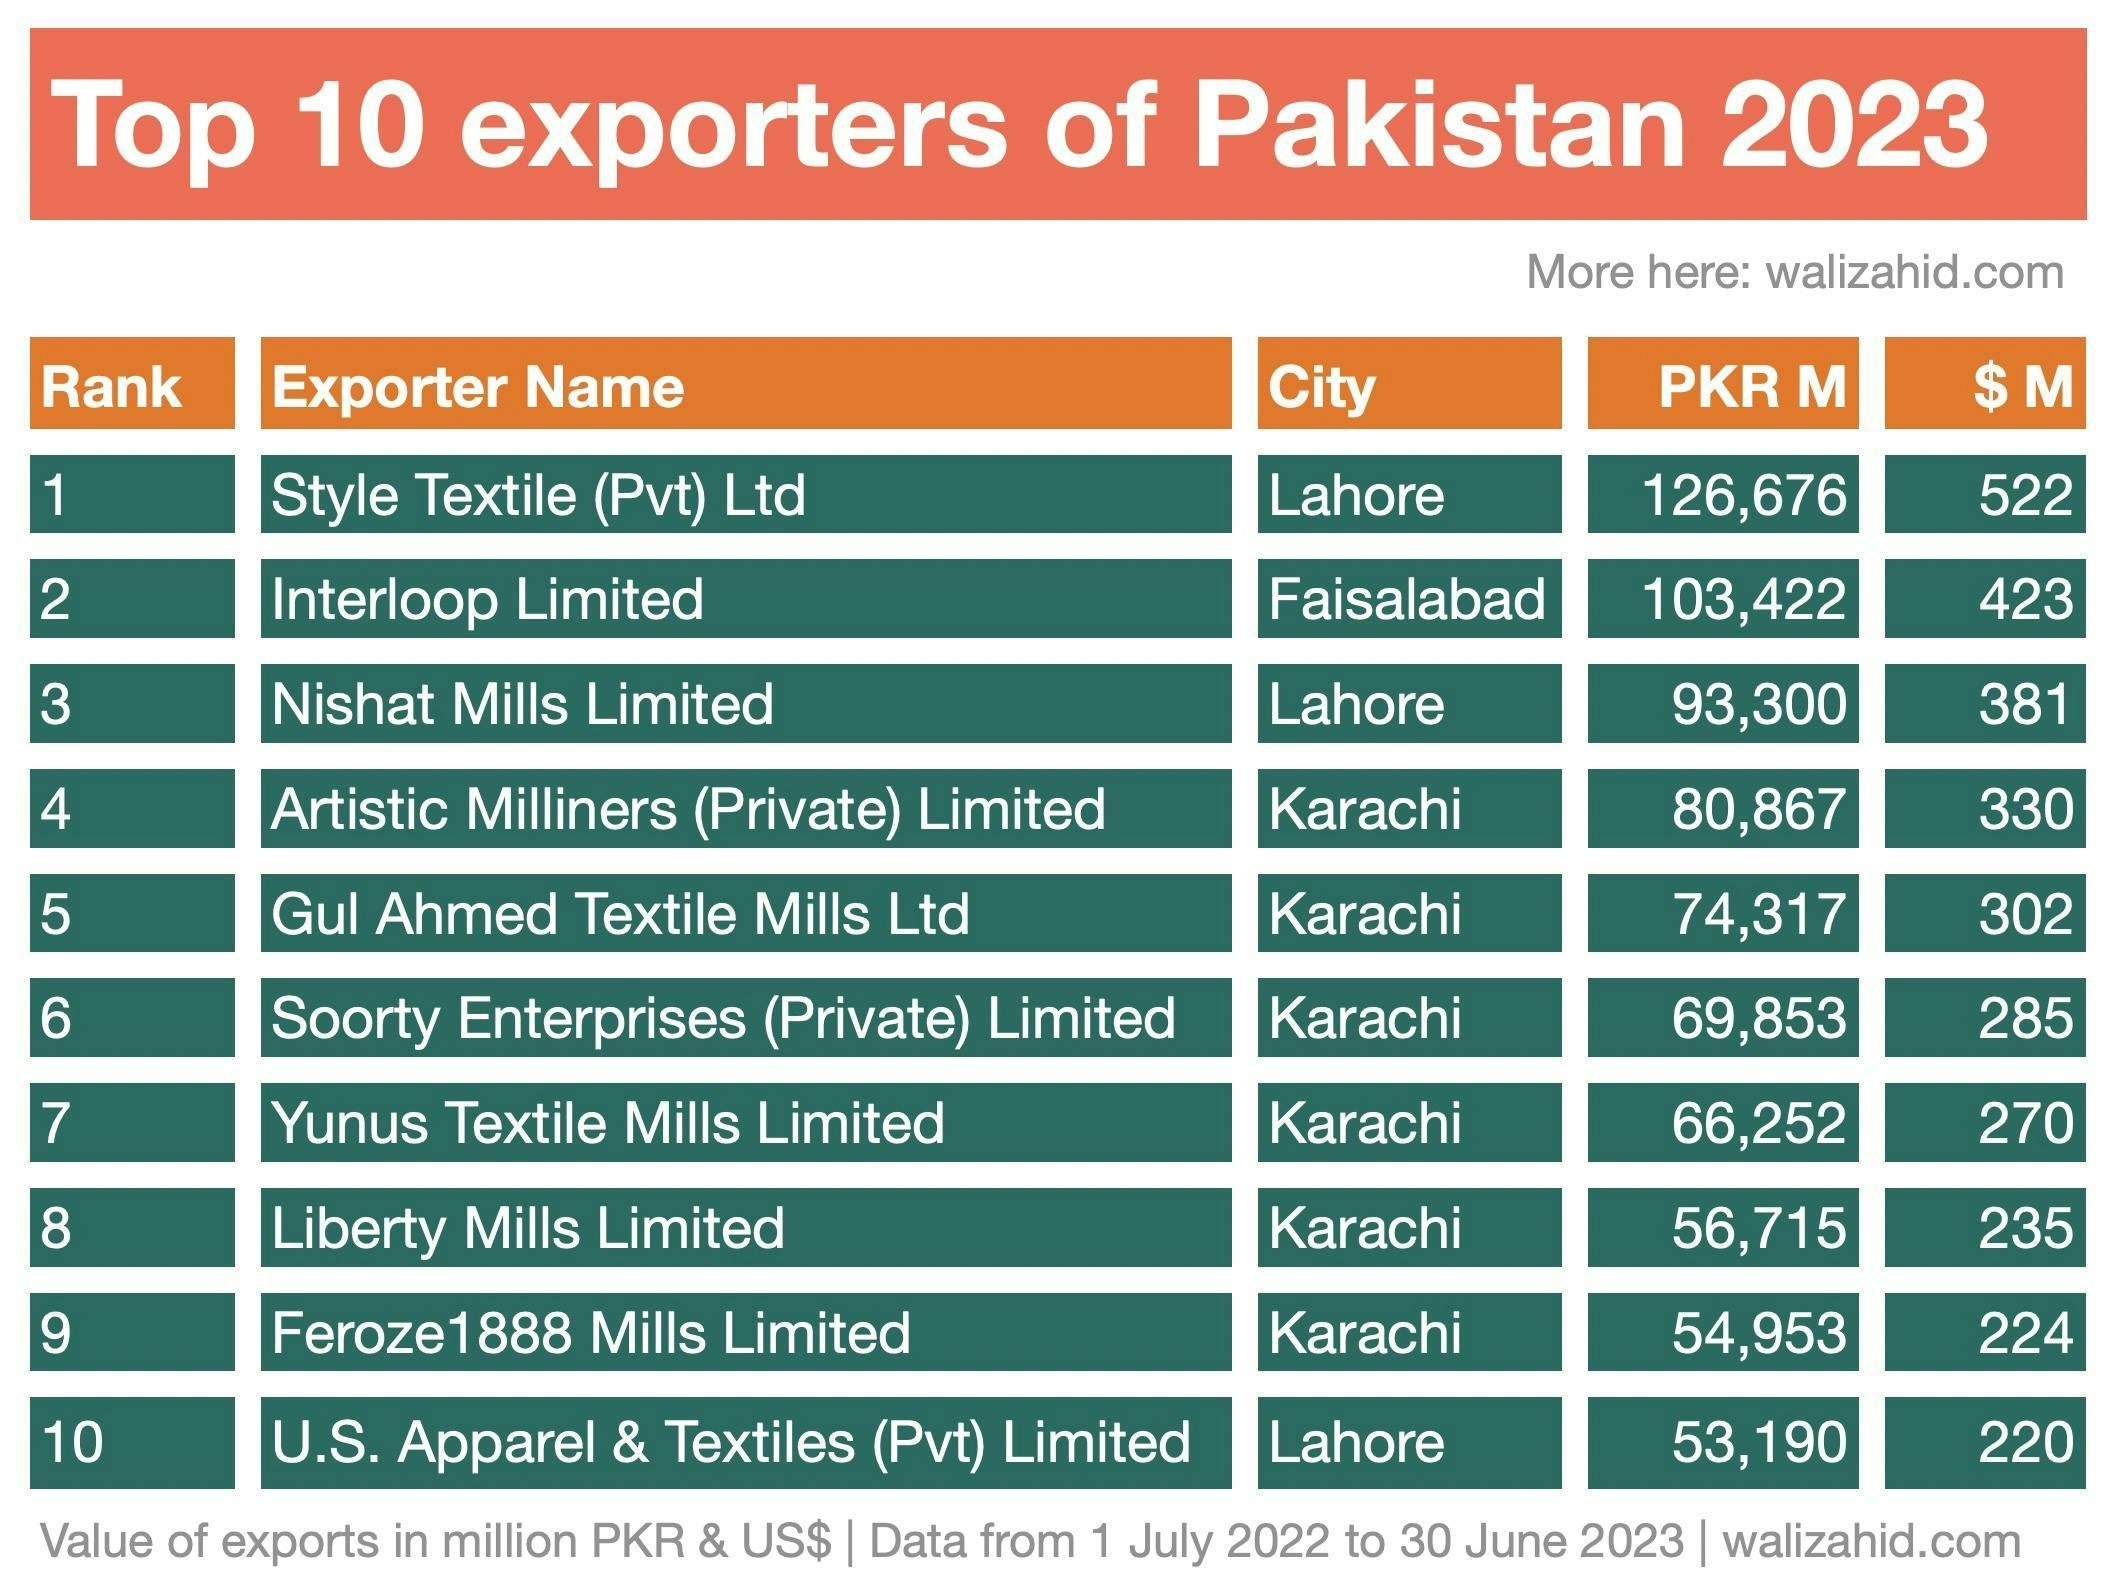 Top 10 exporters of Pakistan in 2023